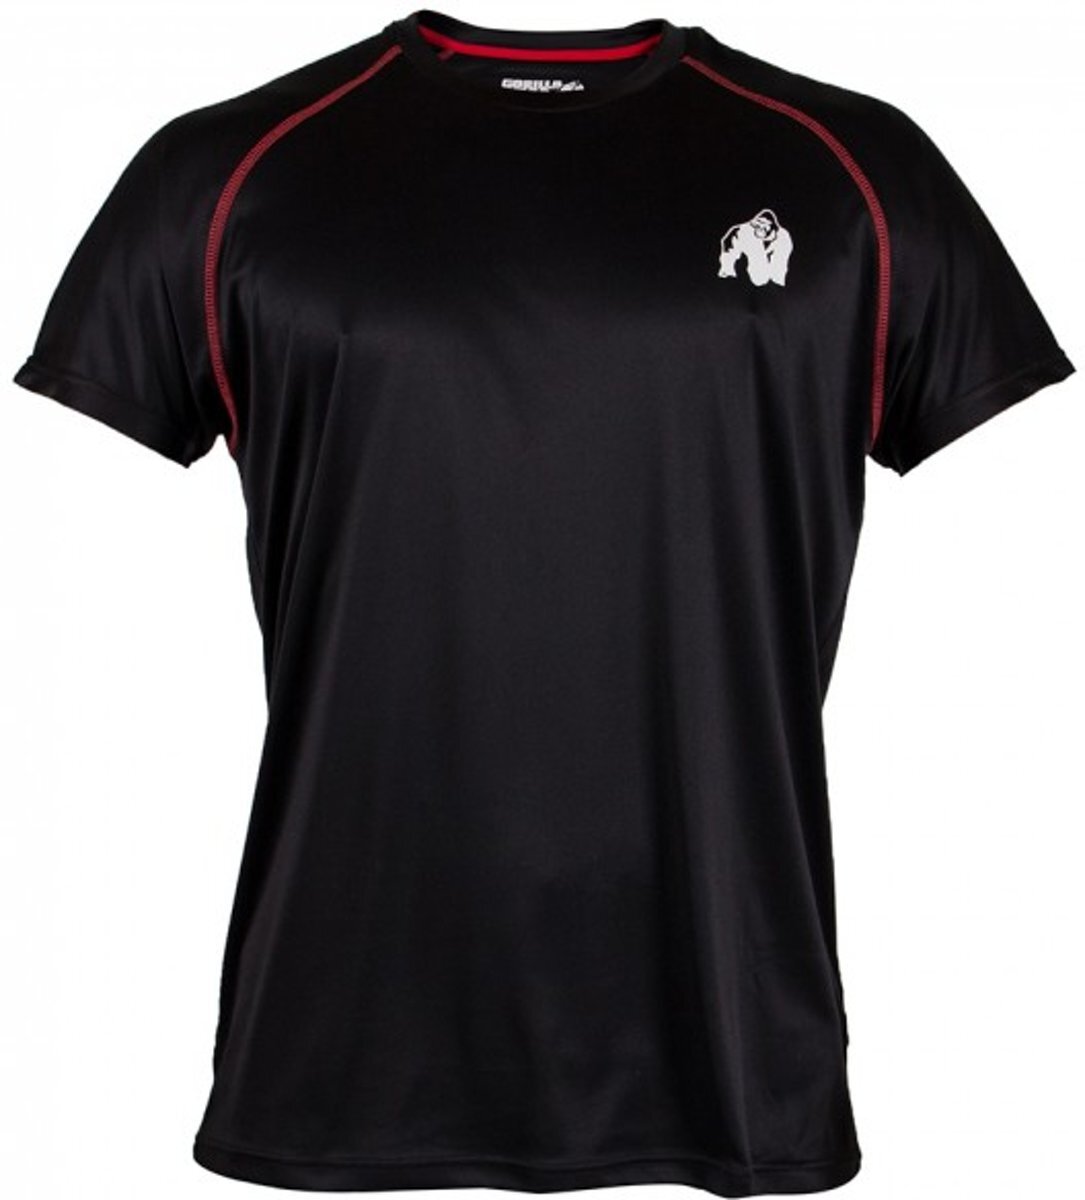 Gorilla Wear Performance t-shirt Black/red - L